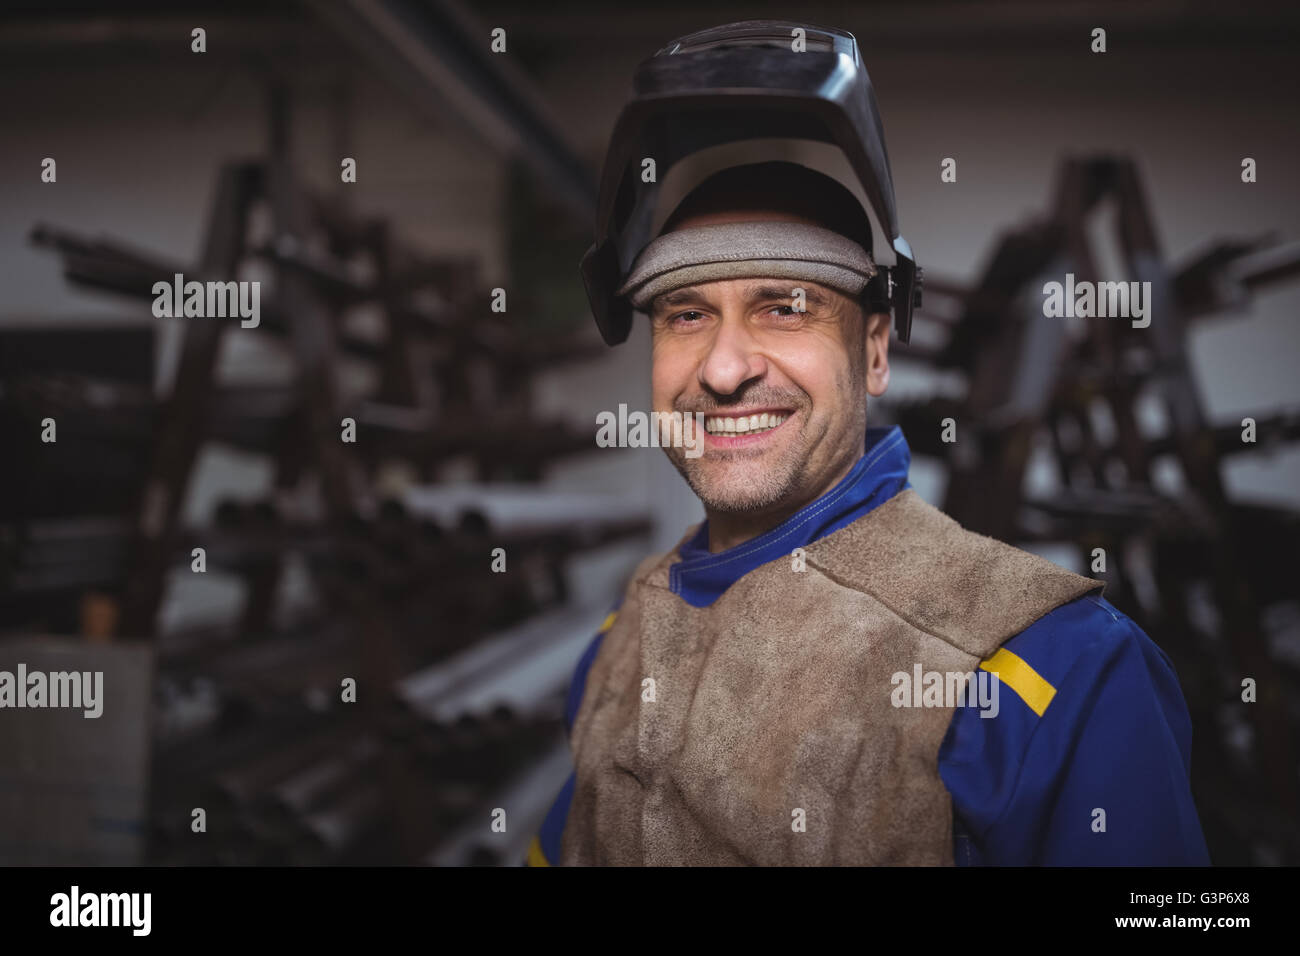 Portrait of worker standing in workshop Stock Photo